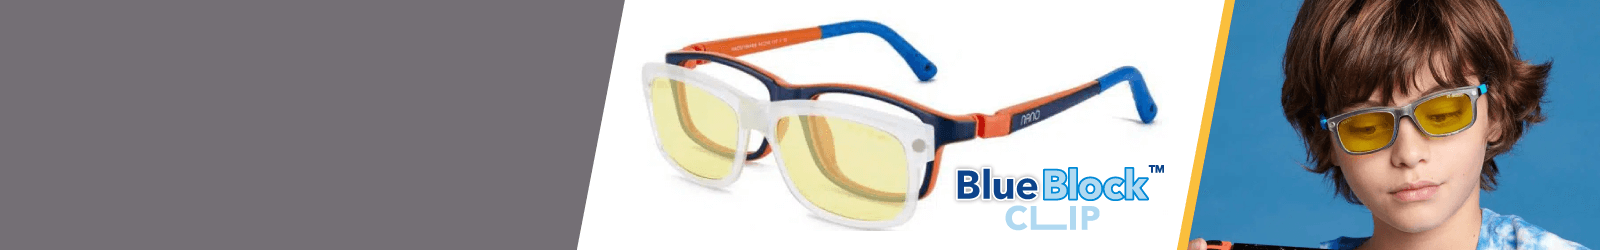 White Nano Blue Block Clip Kids Glasses